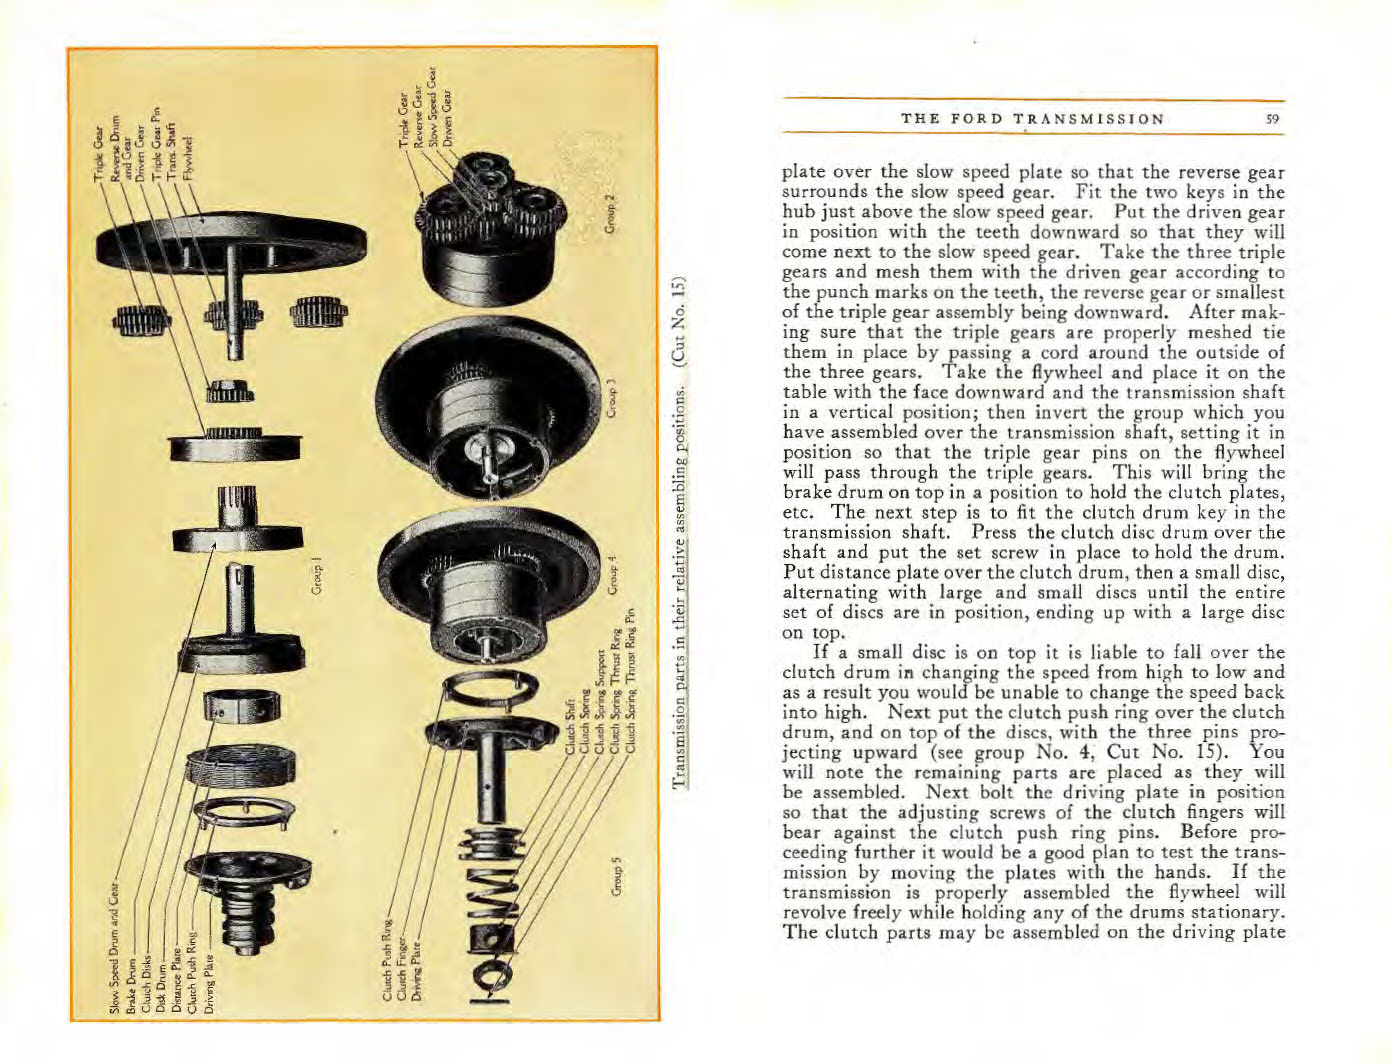 n_1915 Ford Owners Manual-58-59a.jpg